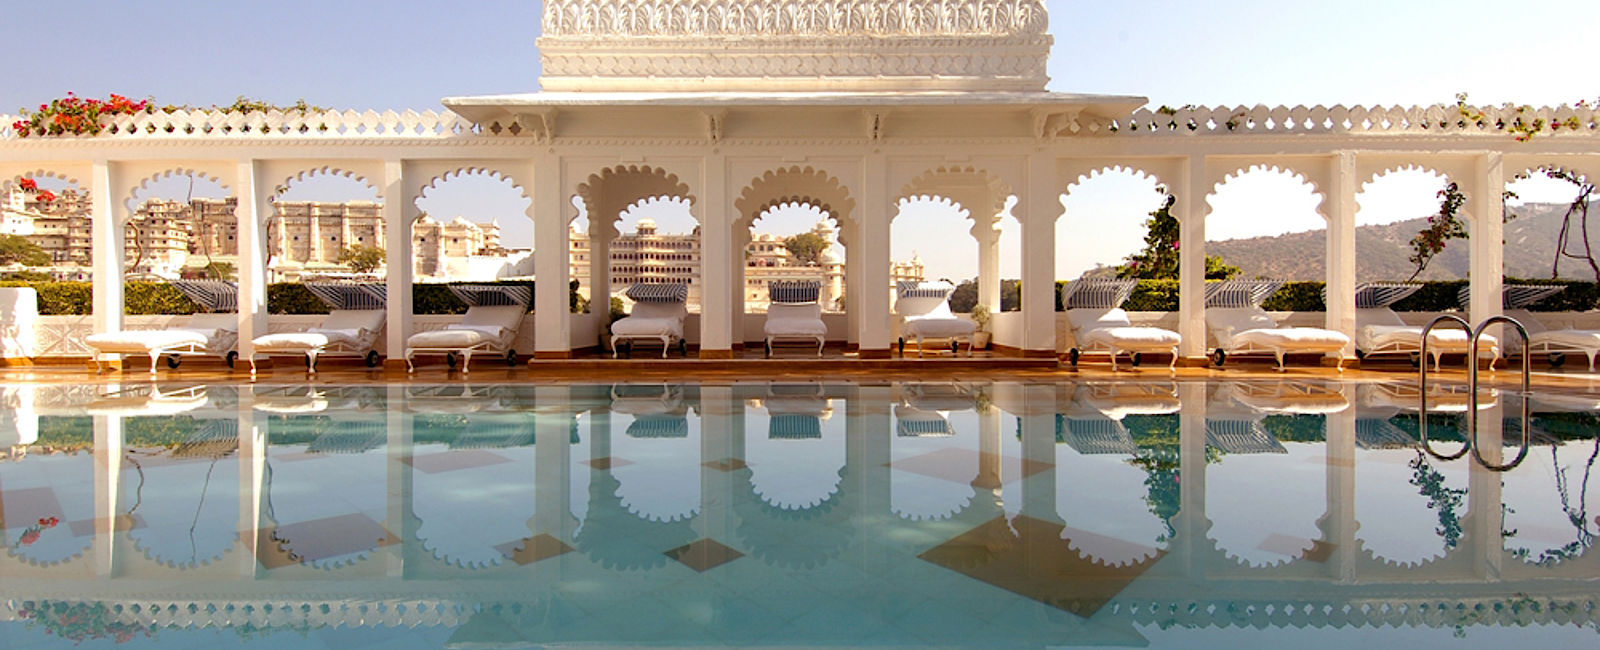 HOTELTEST
 Taj Lake Palace 
 Schwimmendes Erbe aus paradiesischen Zeiten 